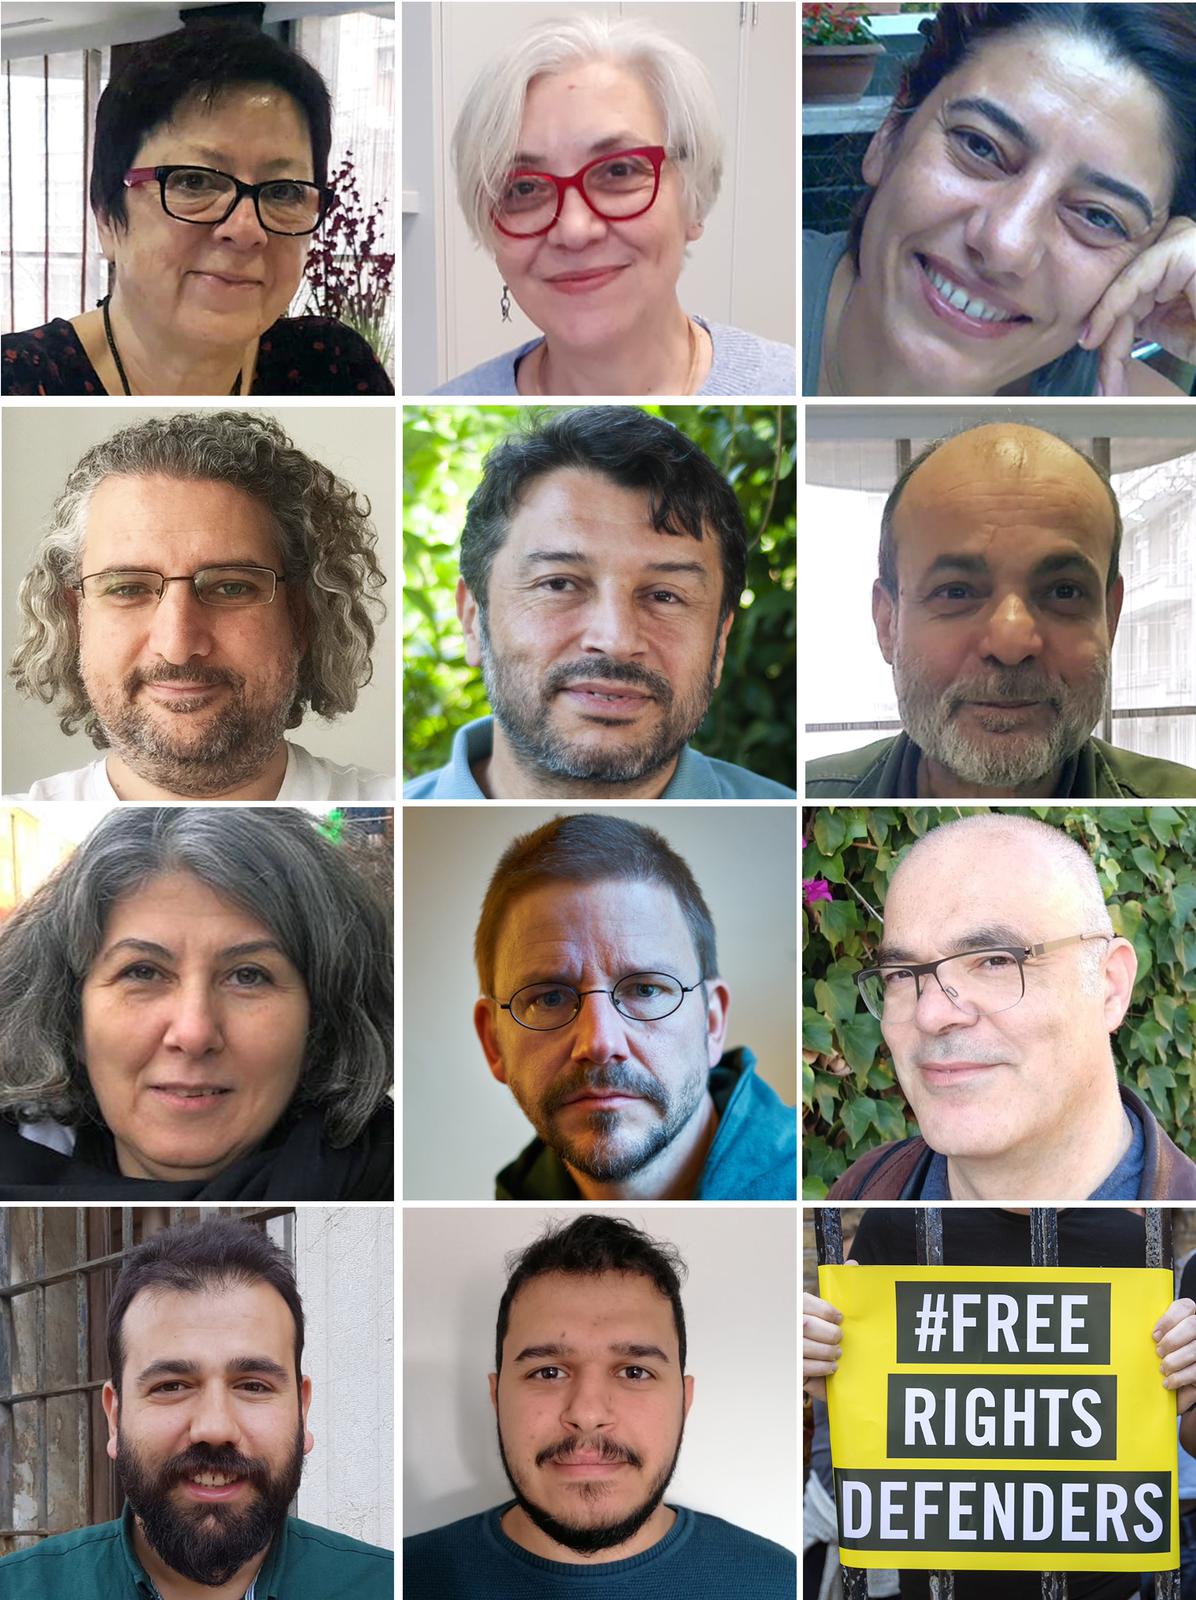 İsmini, Temmuz 2017'de insan hakları eğitim atölyesine katılan on kişinin gözaltına alındığı İstanbul'daki Büyükada'dan alan davada, on bir insan hakları savunucusu yargılanıyor